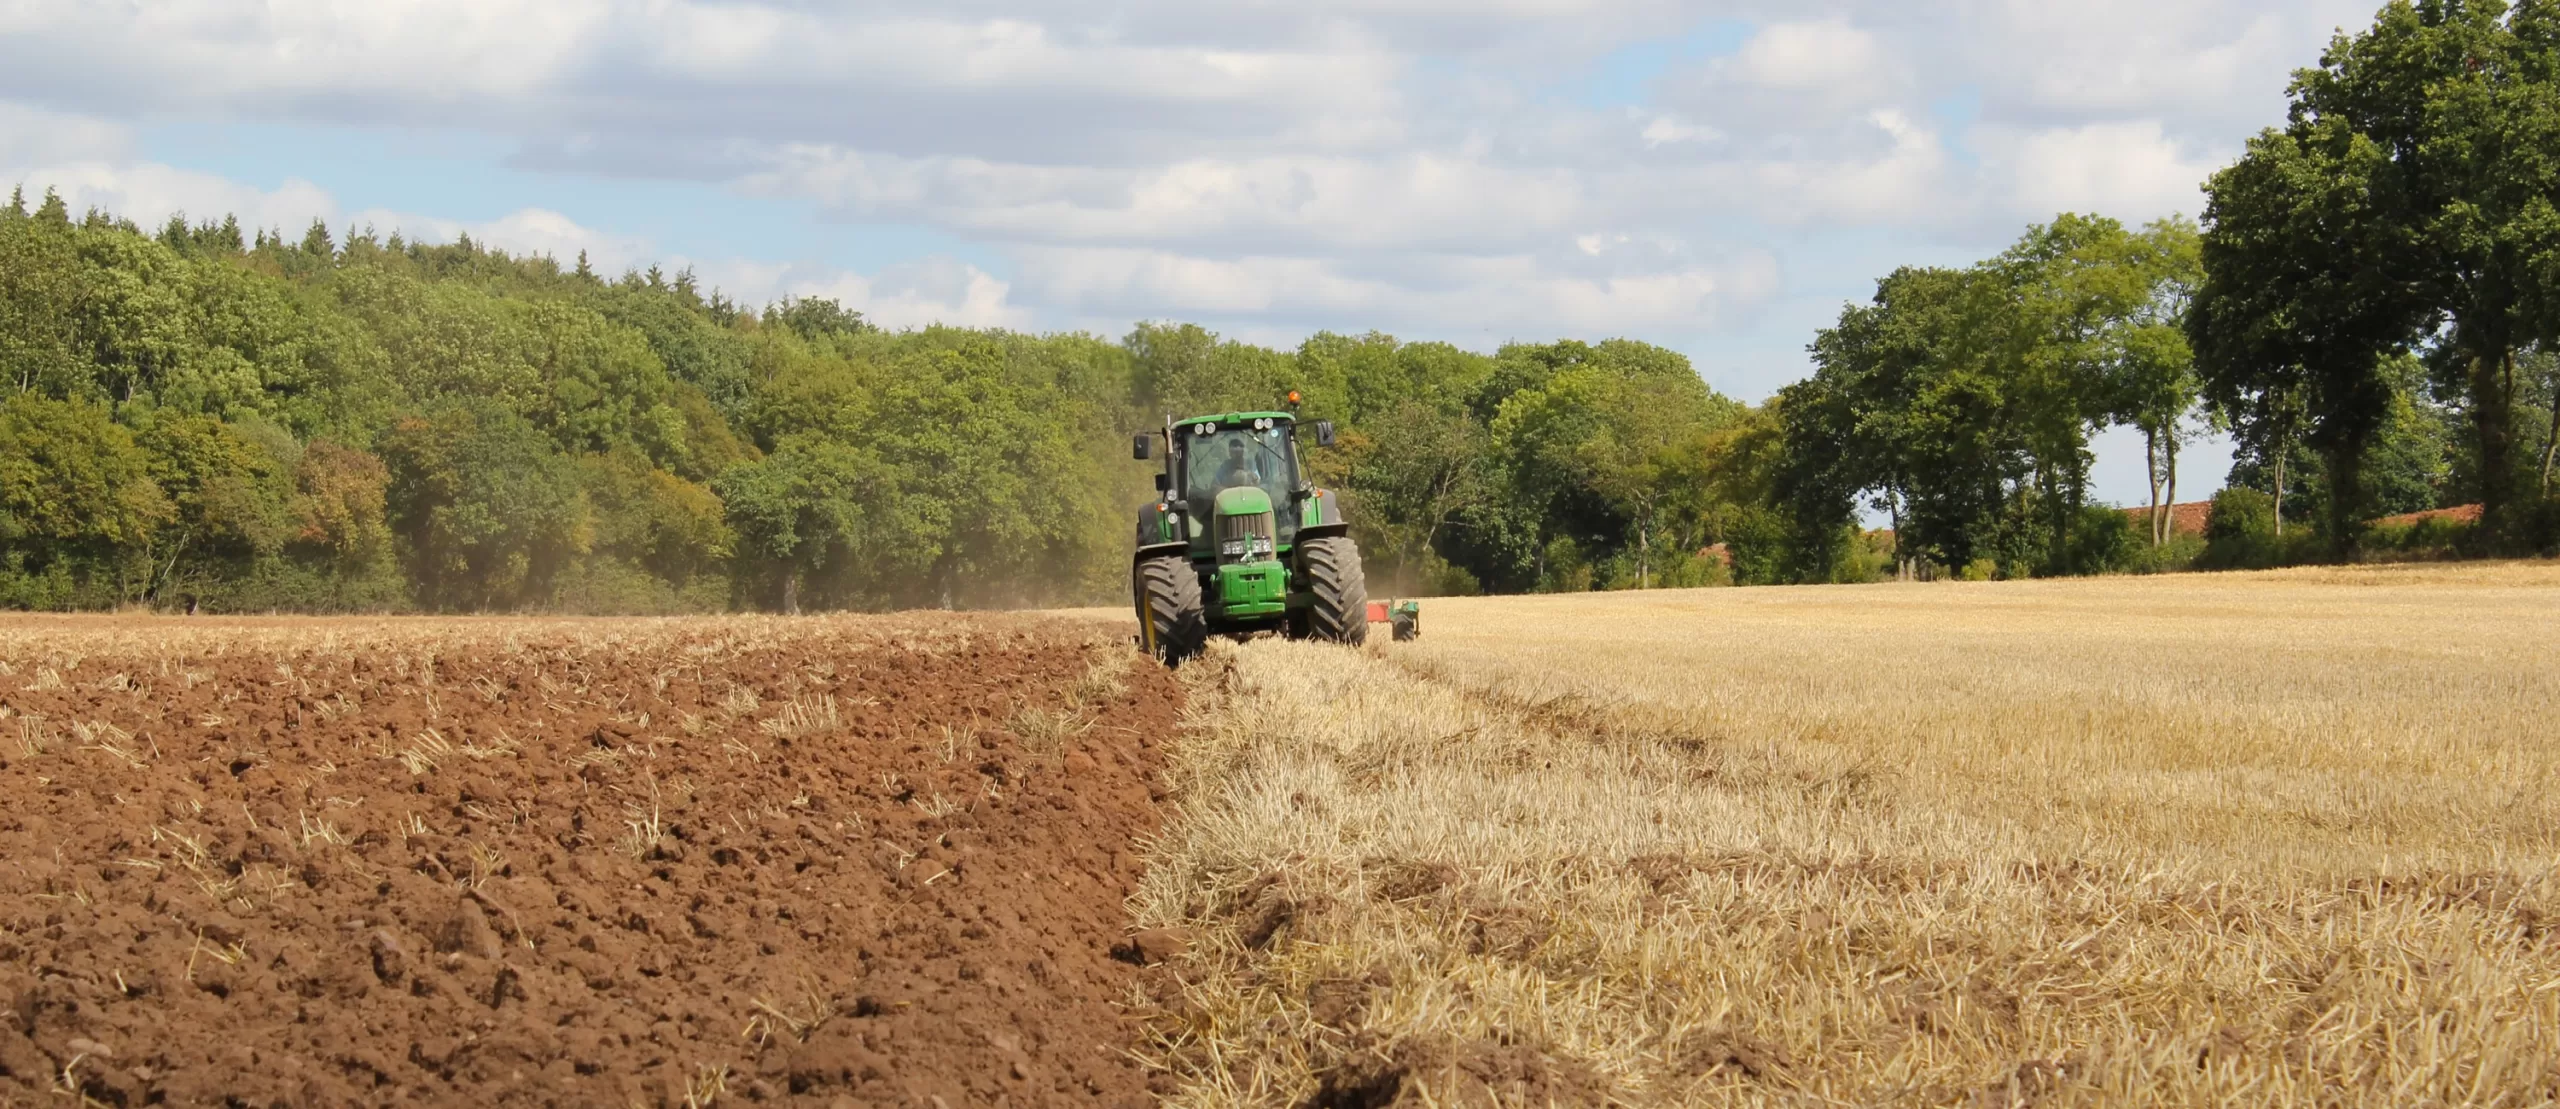 Blog Image Till or no-till farming: Opening up the debate